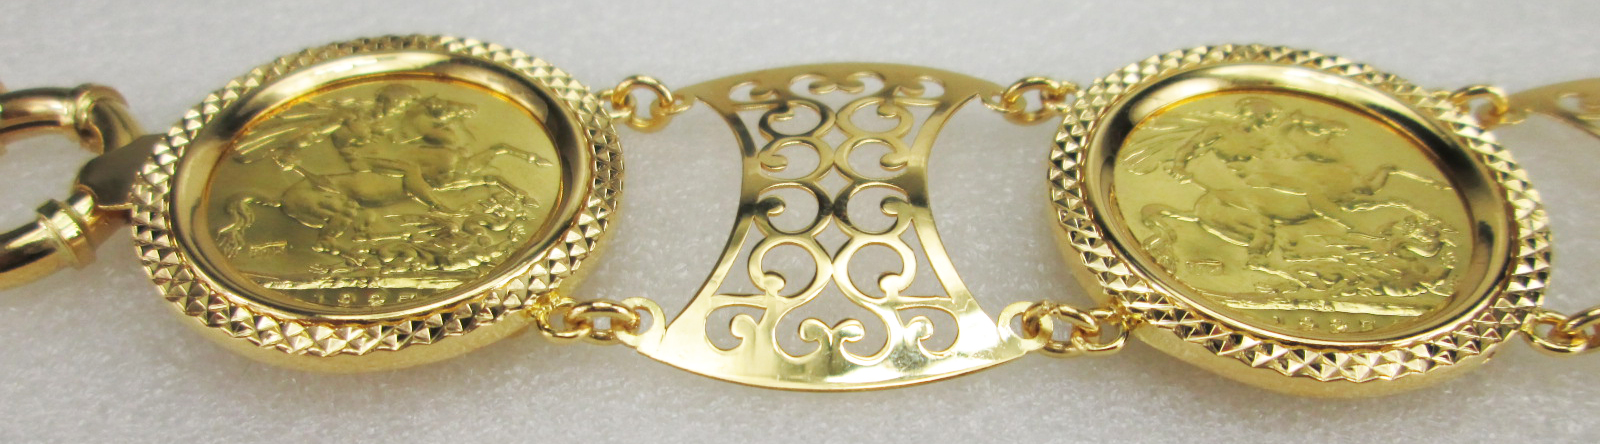 Branch (2) 21 carat gold chain bracelet, weight 7.08 grams - مصاغات الأربش  للذهب بالسعودية قسم المتجر الإلكتروني